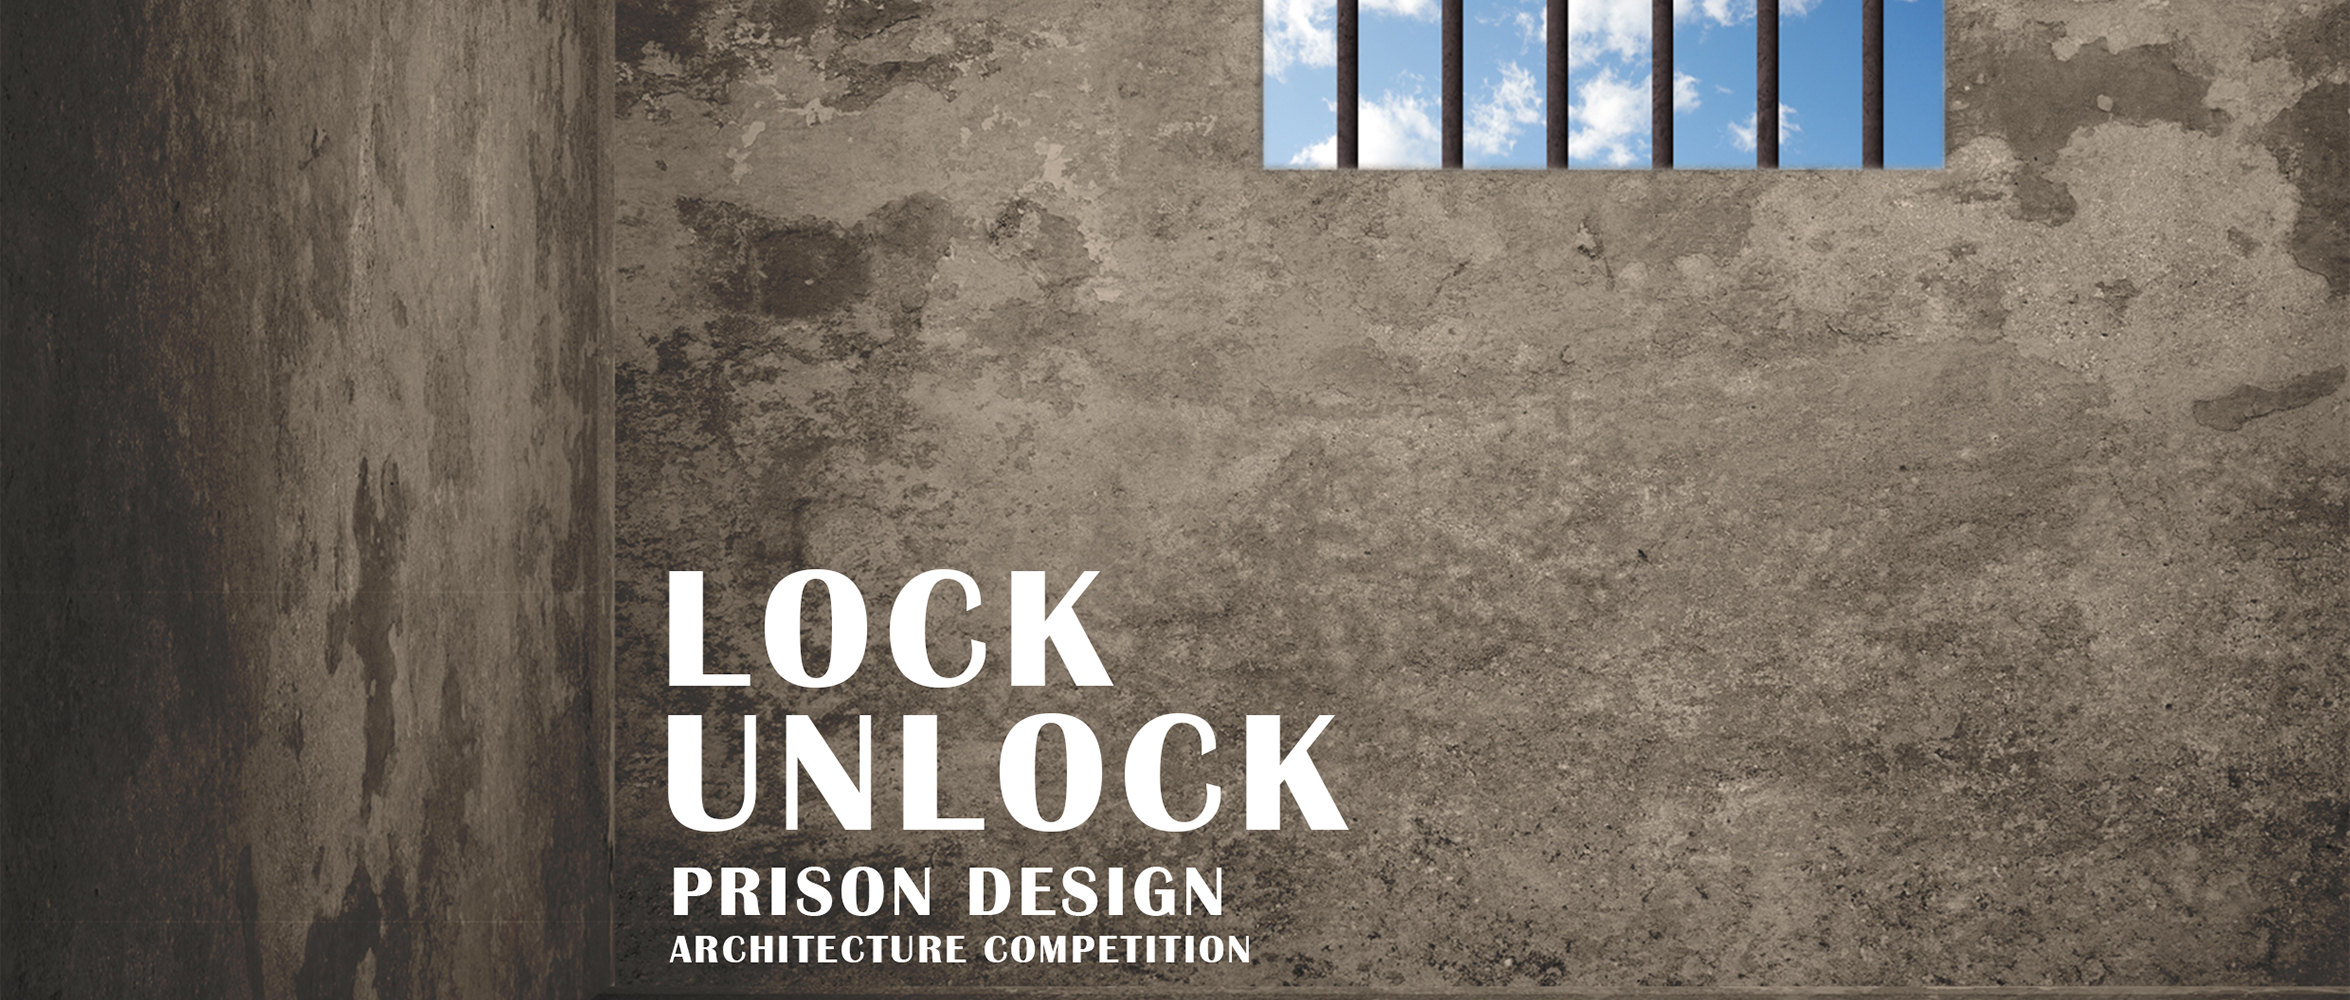 “LOCK-UNLOCK” 监狱设计竞赛